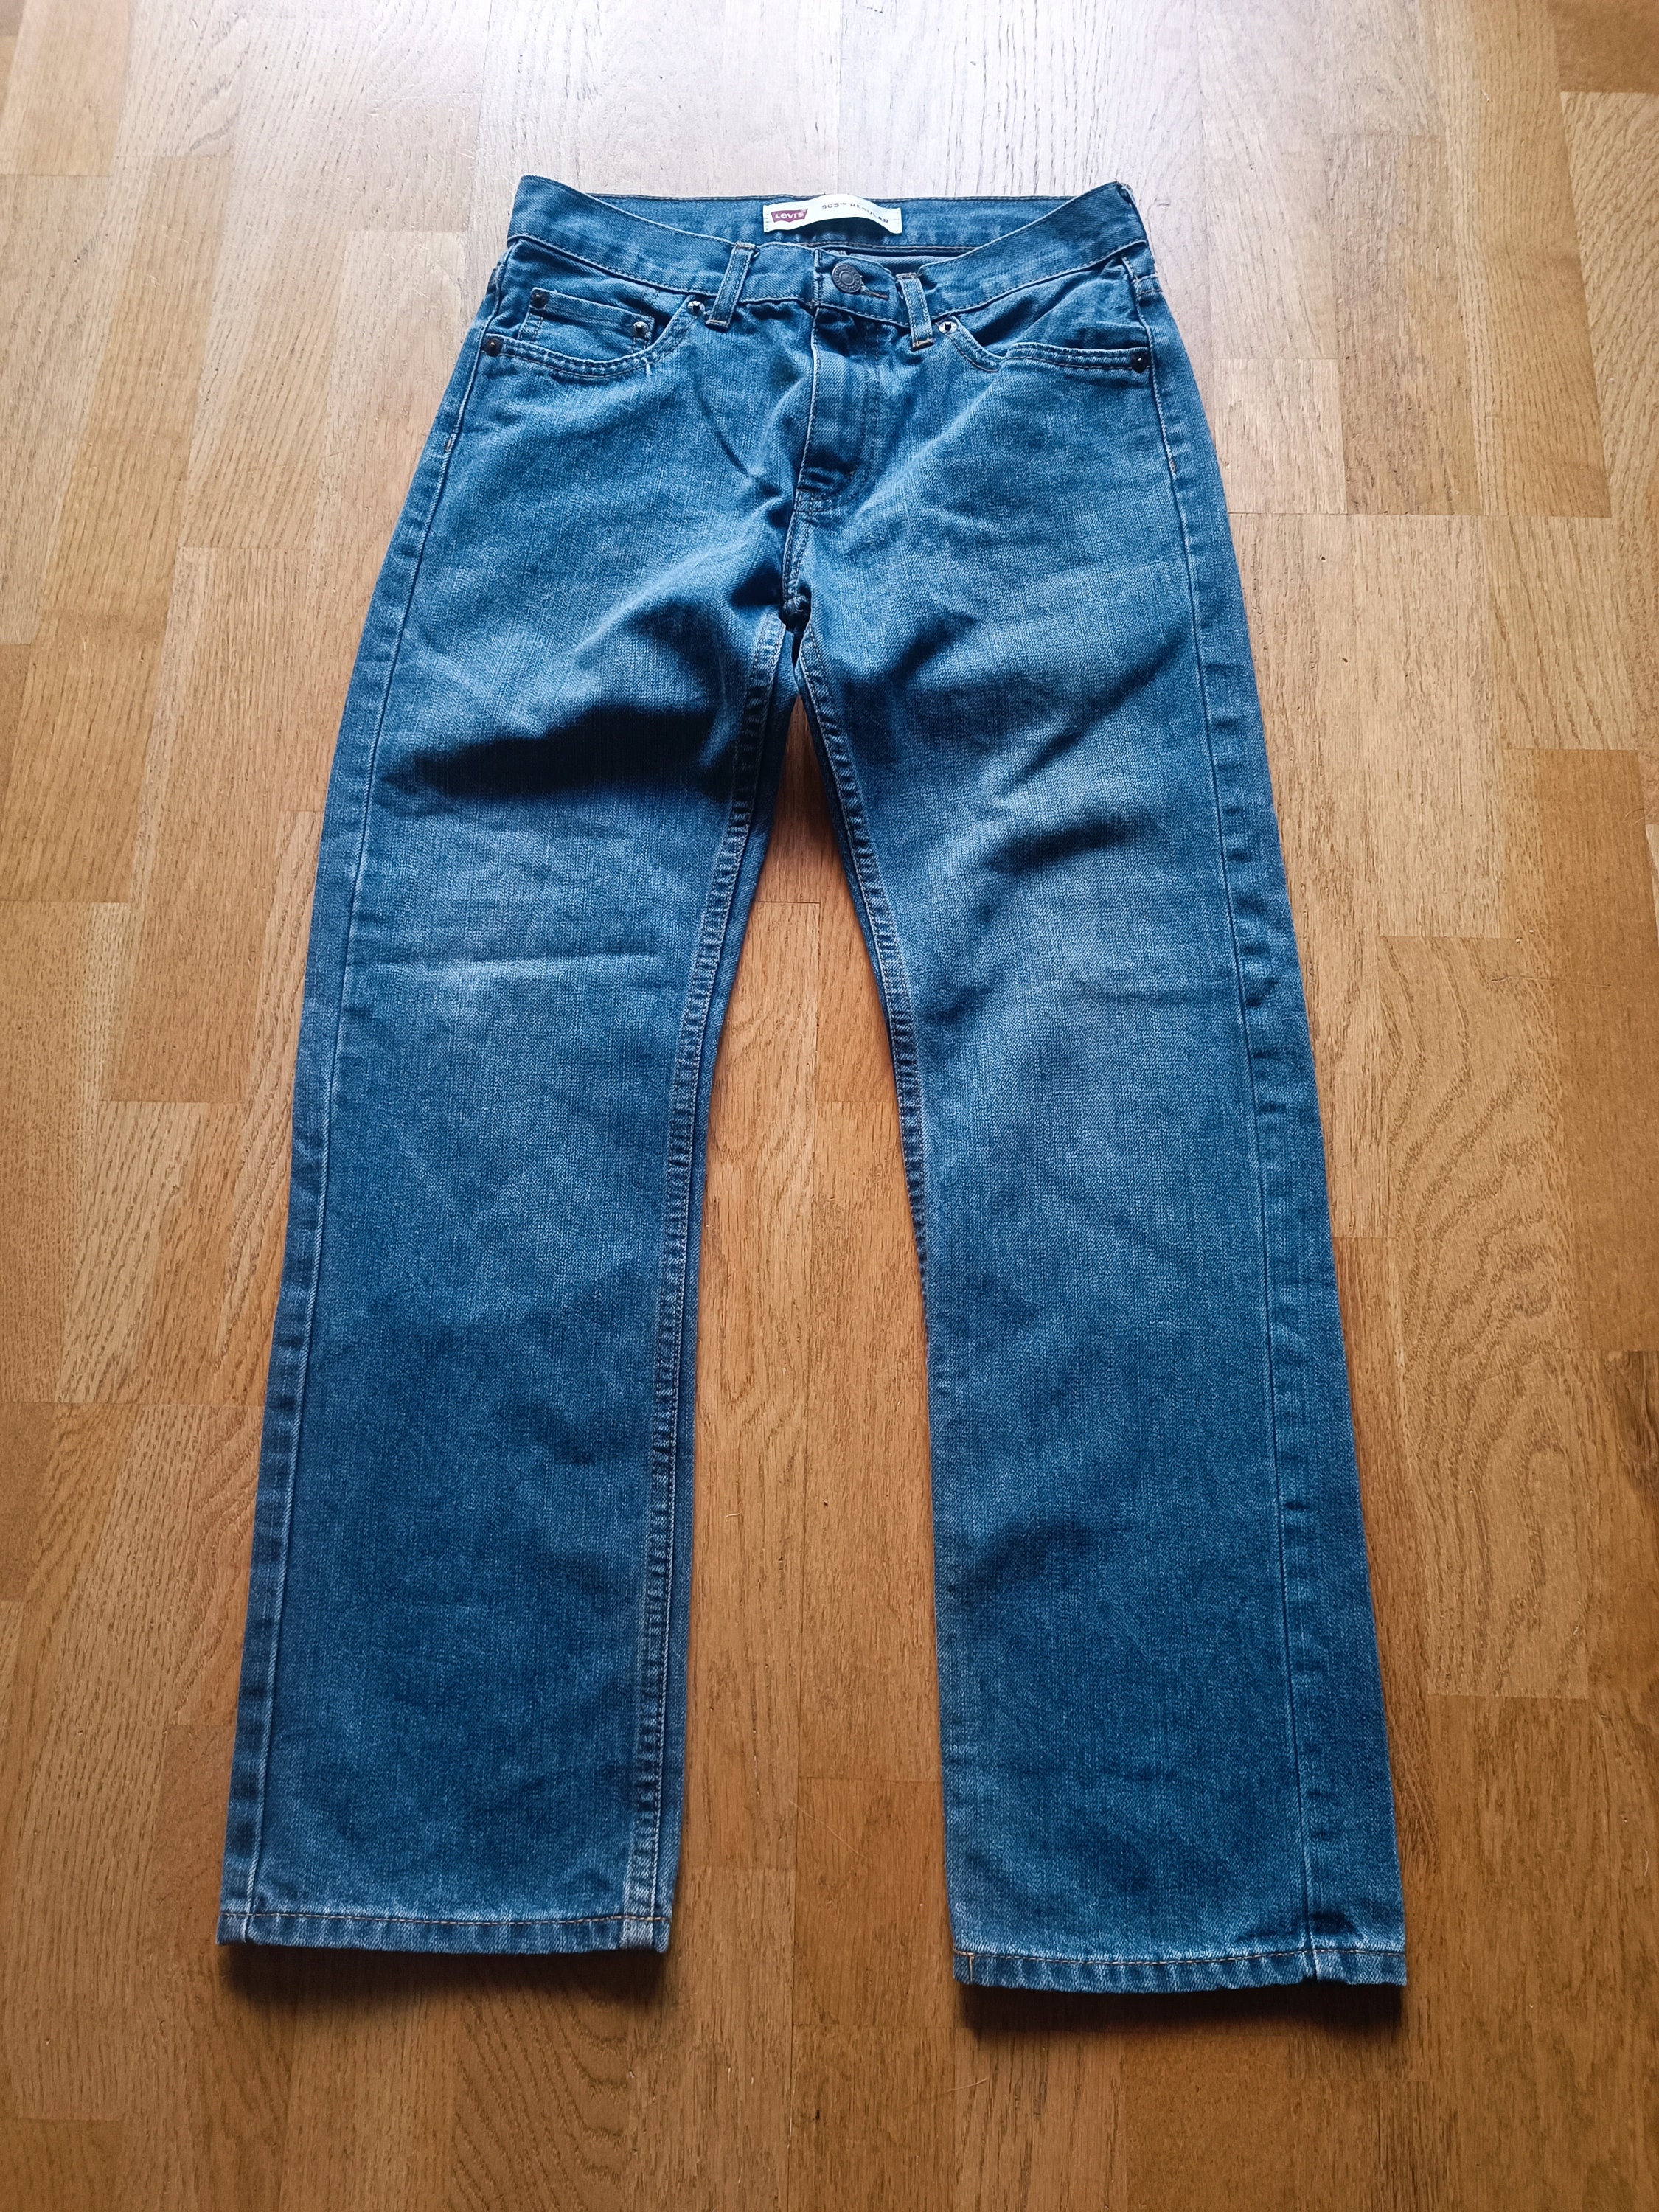 Levis 529 jeans -  France